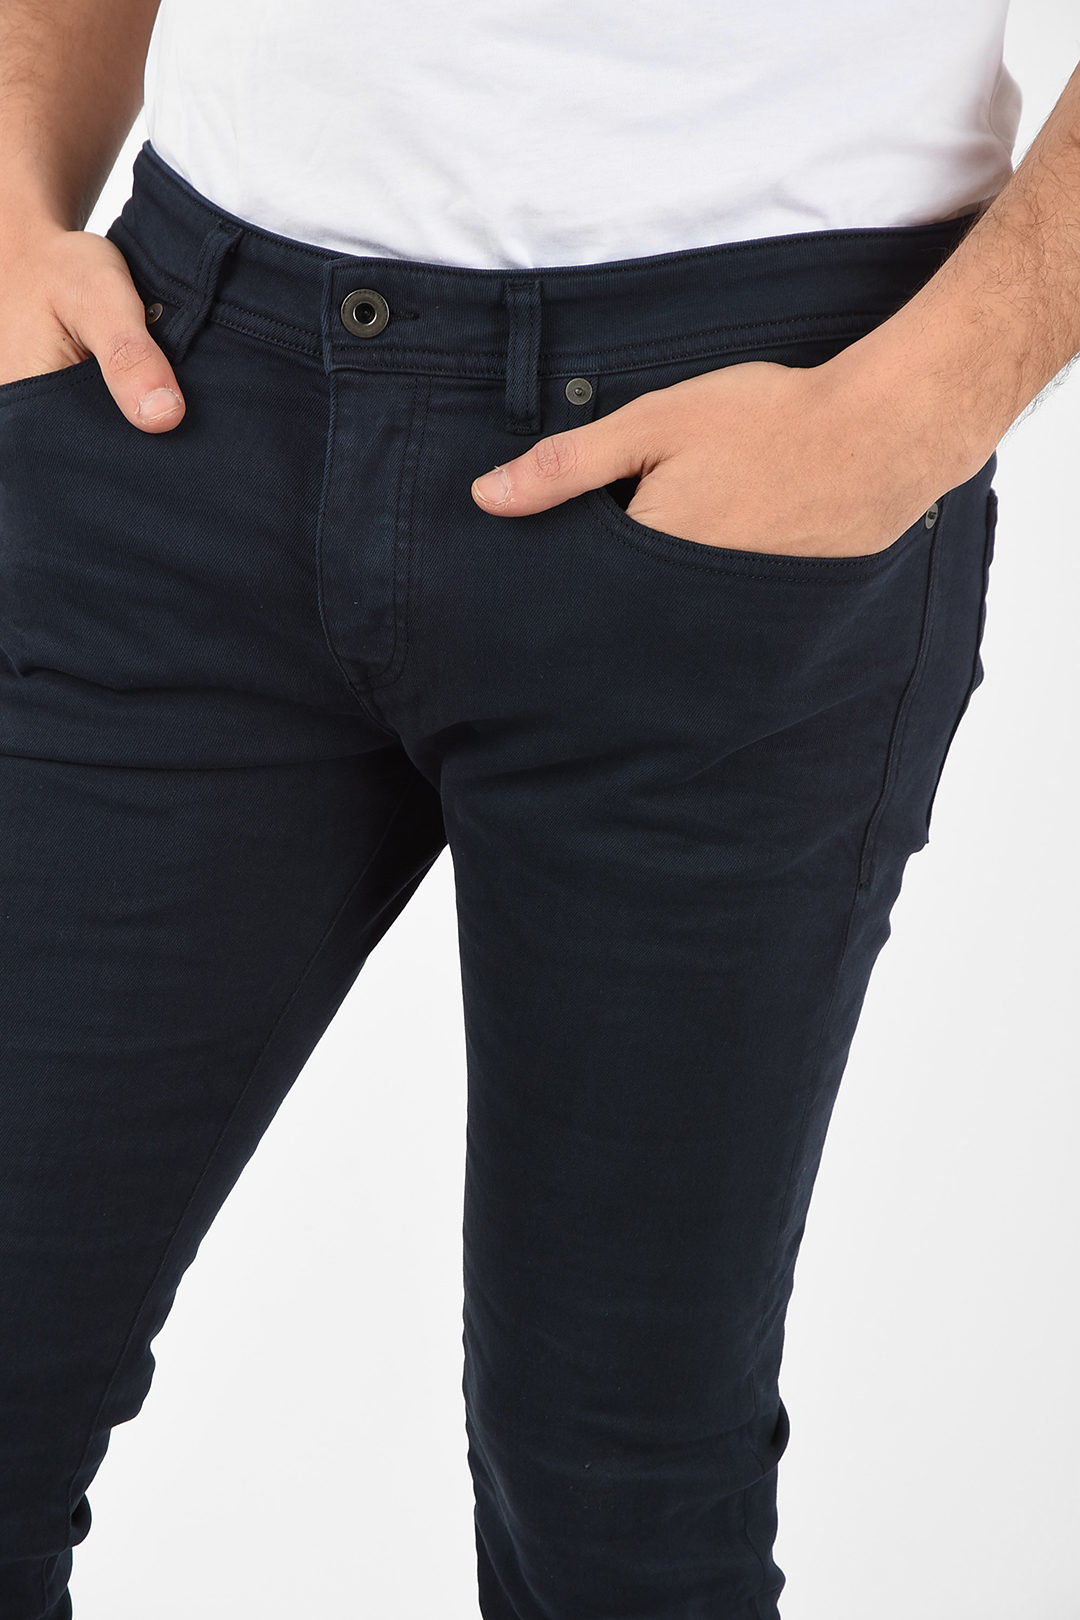 Diesel BLACK GOLD 16cm Skinny Fit TYPE-2614 Jeans men - Glamood Outlet